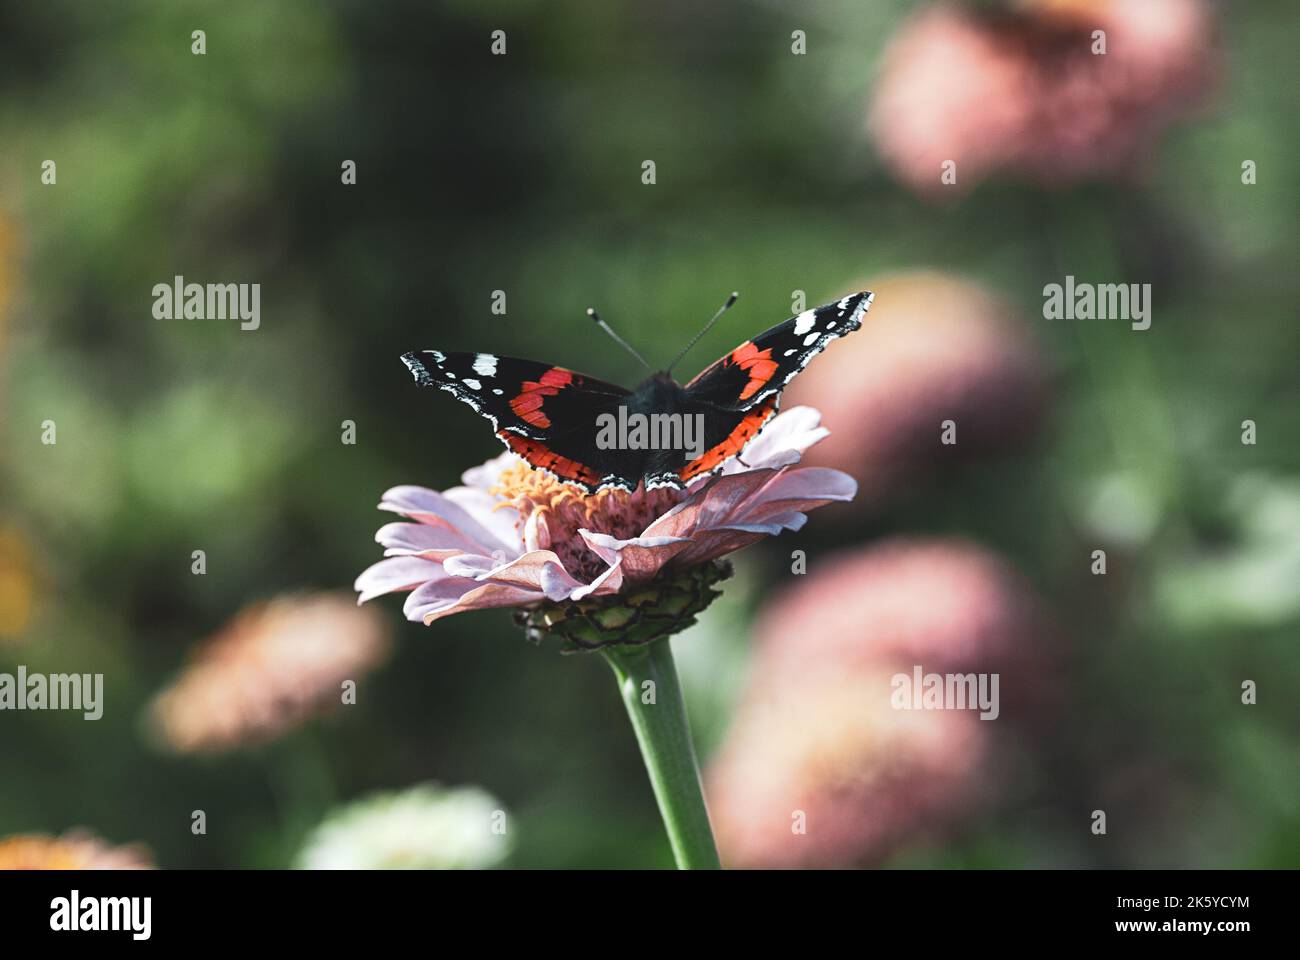 Roter Admiralschmetterling auf Zinnia Blume - Vanessa atalanta auf der Nahrungssuche im Garten Stockfoto